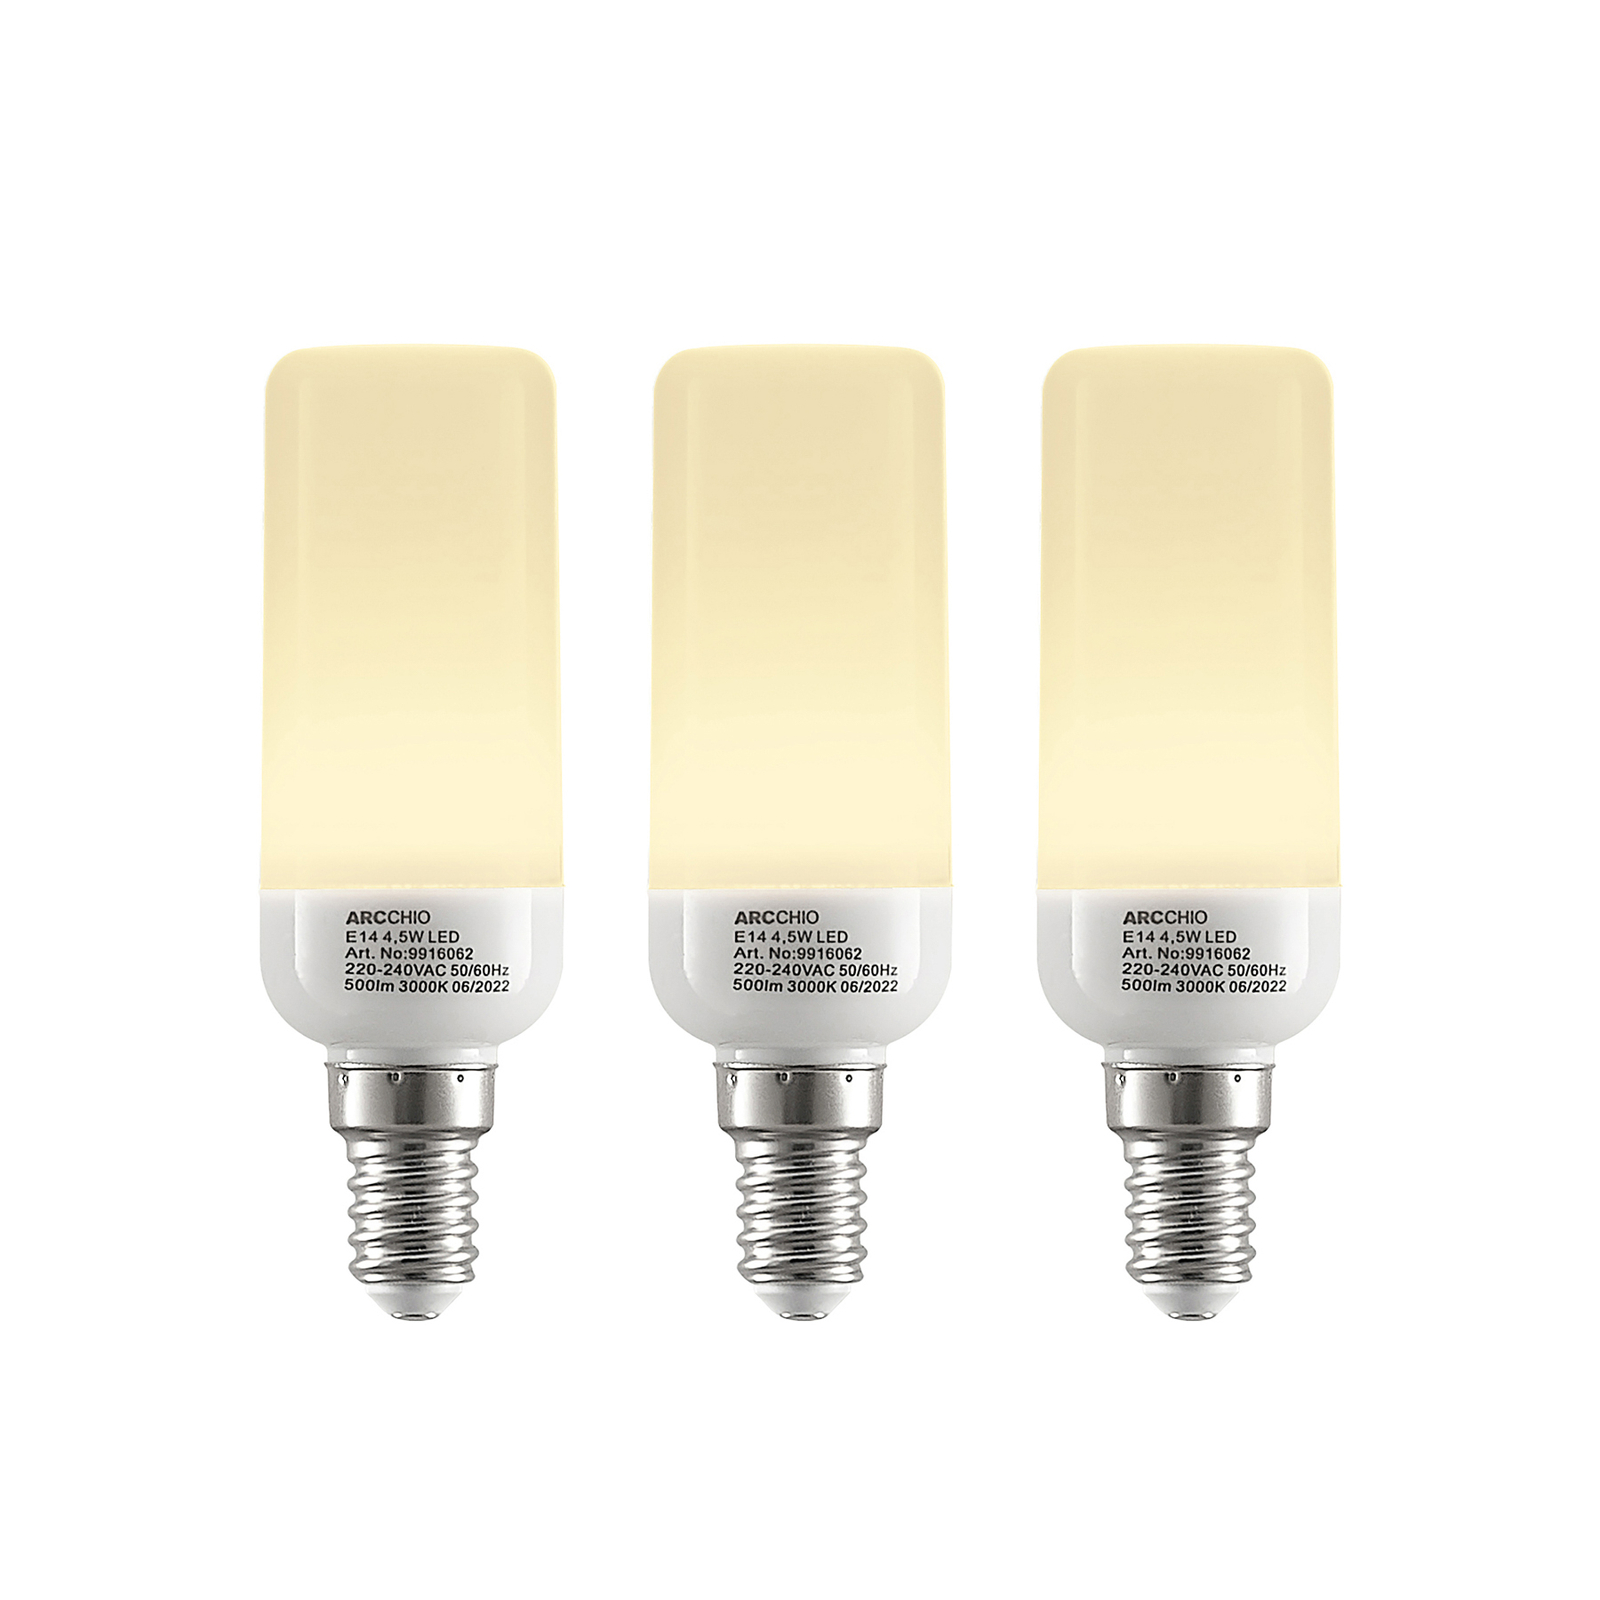 Arcchio LED tube bulb E14 4.5W 3,000K set of 3